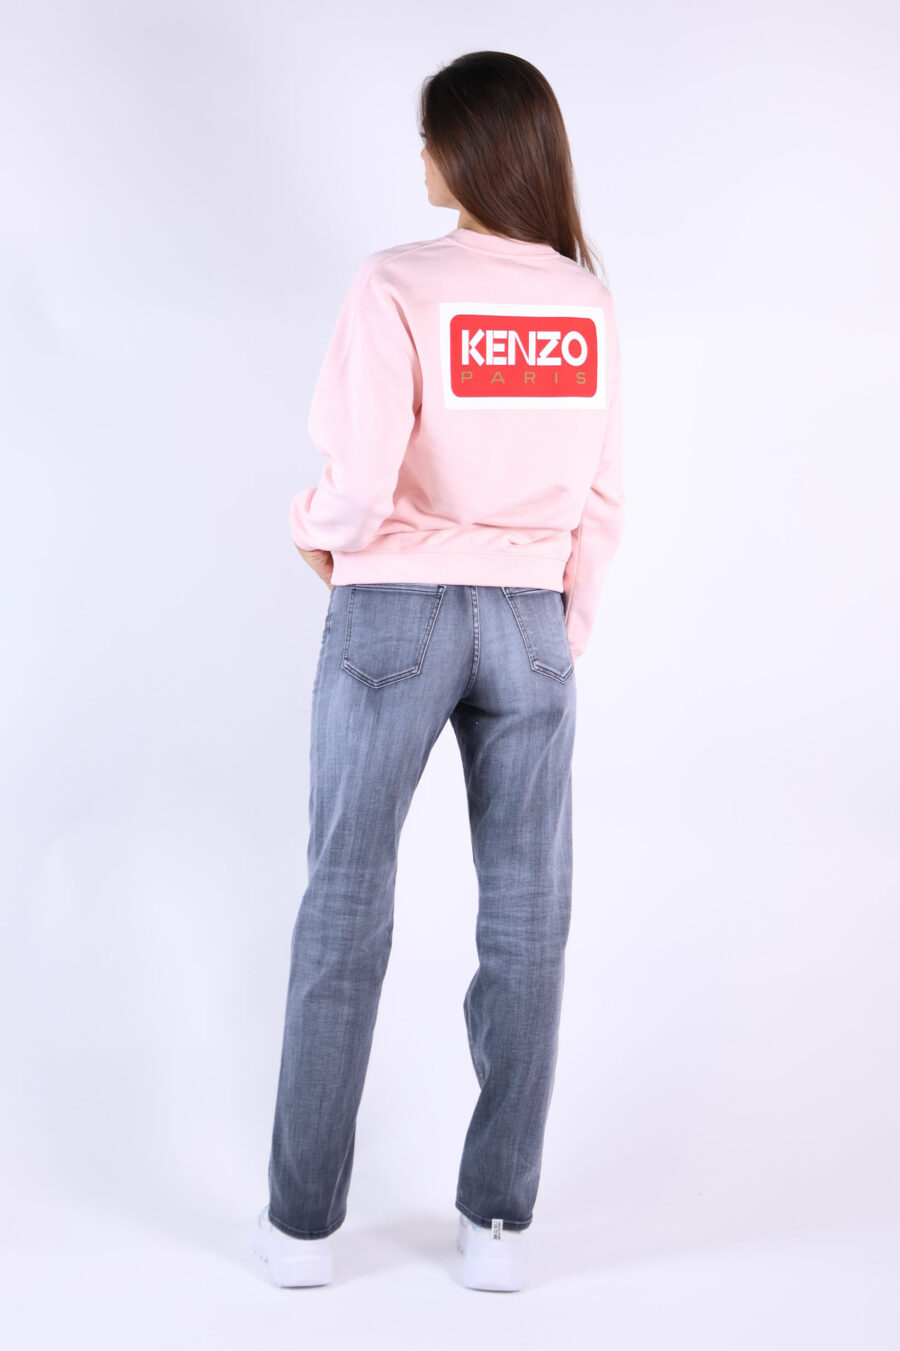 Camisola cor-de-rosa com maxilogo "kenzo paris" nas costas - 361223054662201682